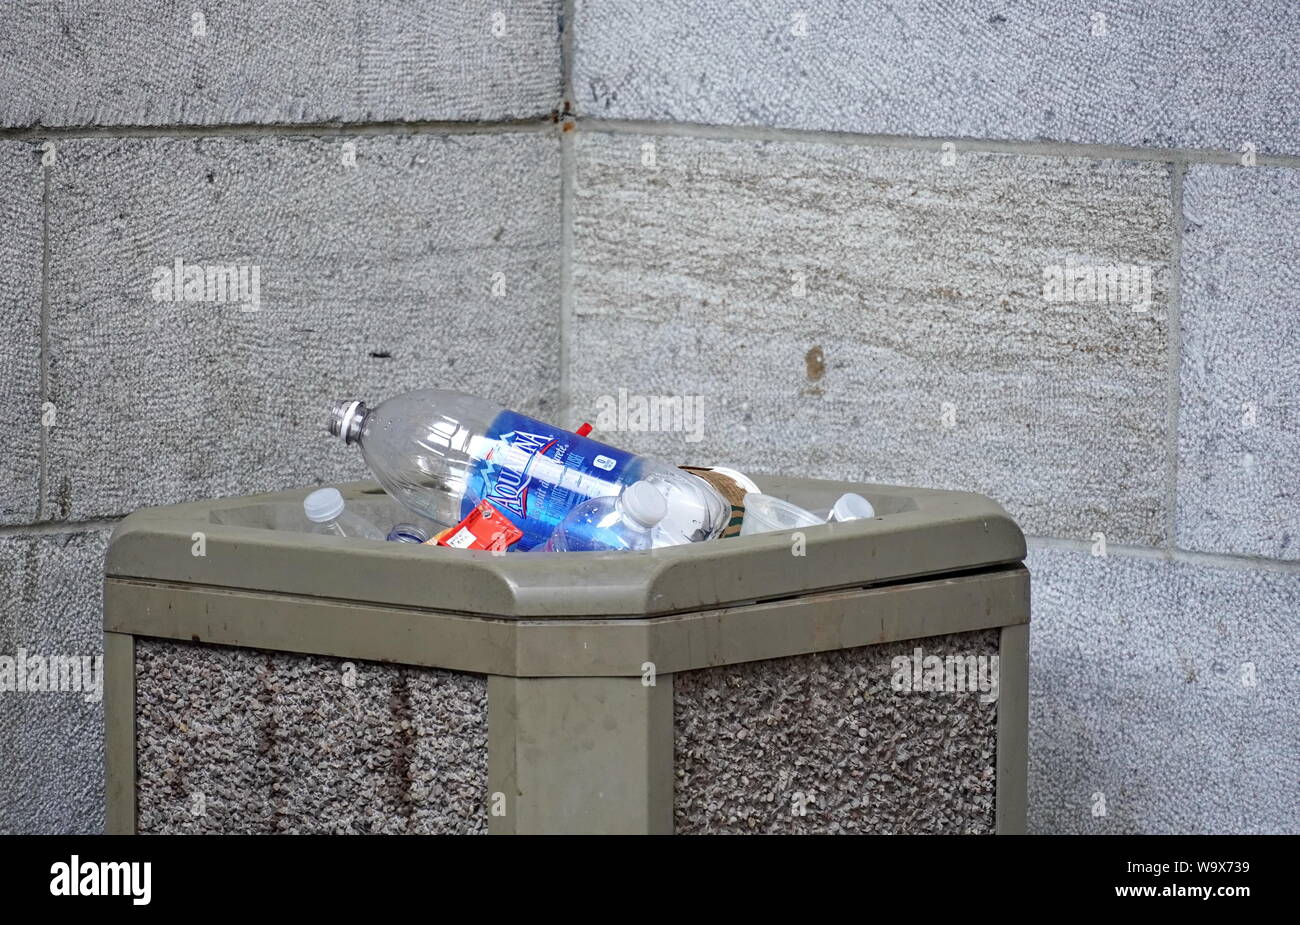 Montréal, Québec / Canada - Juillet 25, 2019 : de l'eau recyclable bouteille dans une poubelle au lieu d'un bac de recyclage Banque D'Images